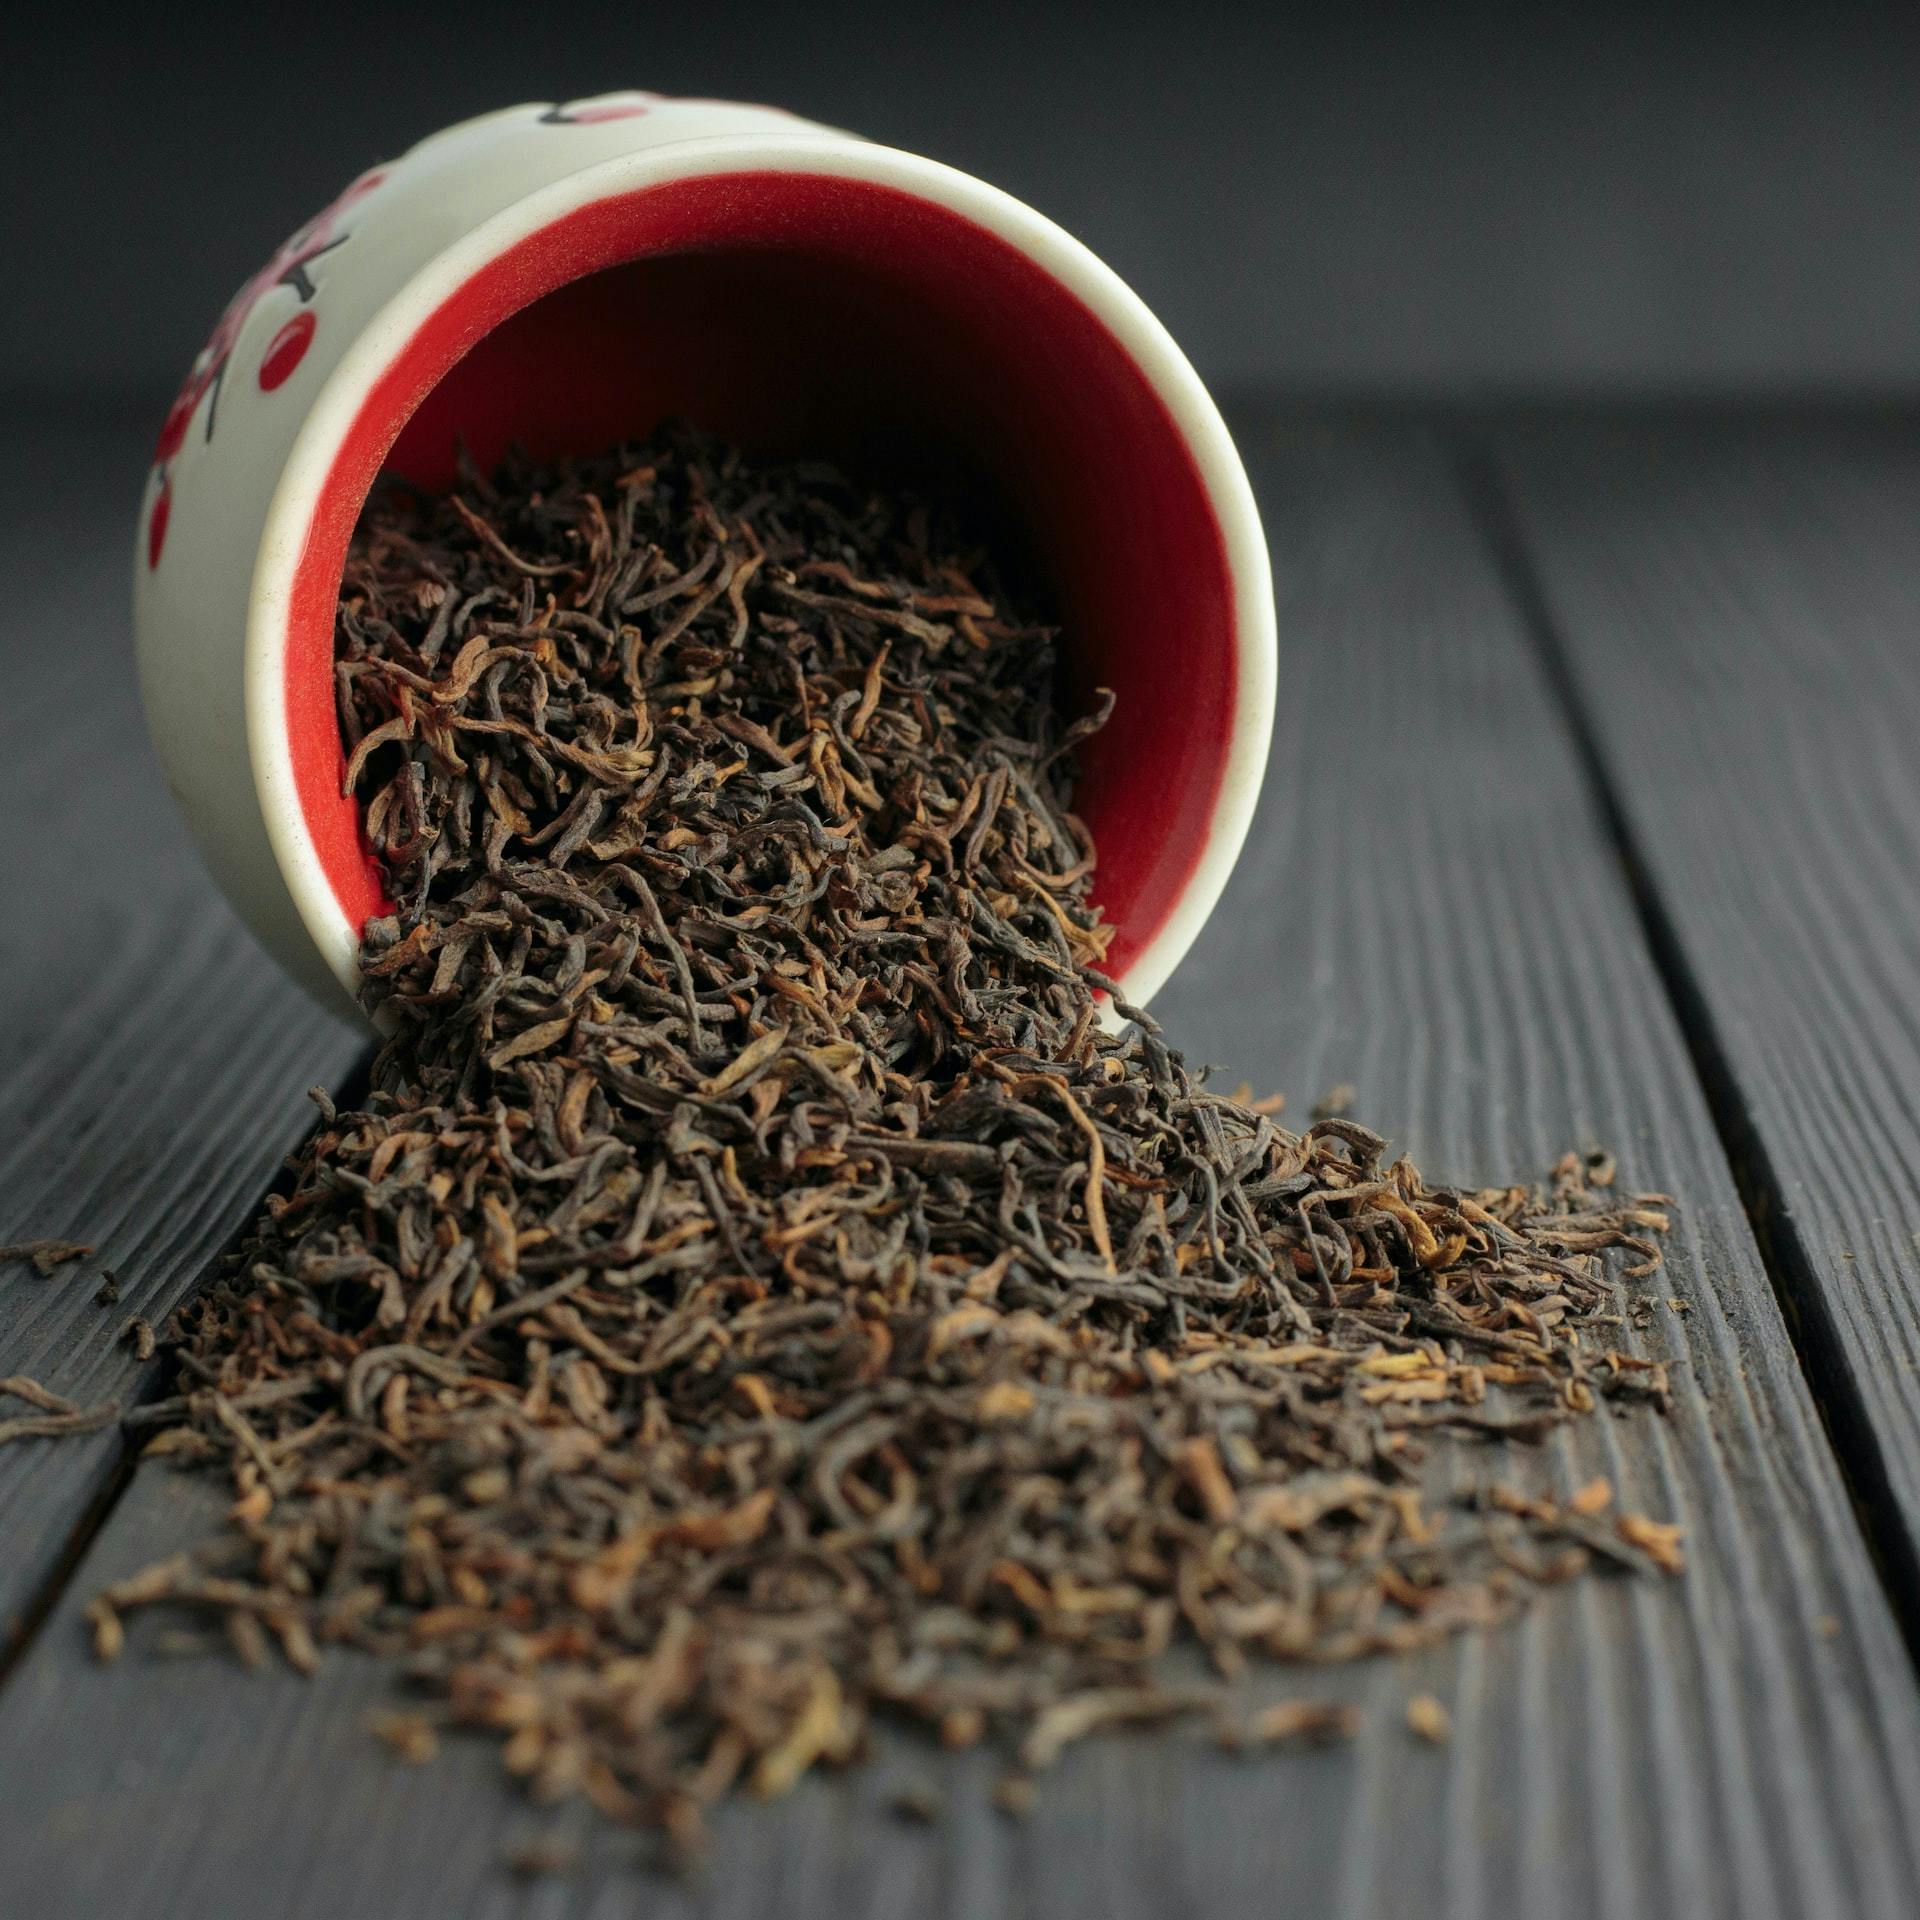 Les 7 bienfaits du thé noir à savoir absolument ! – Théière France